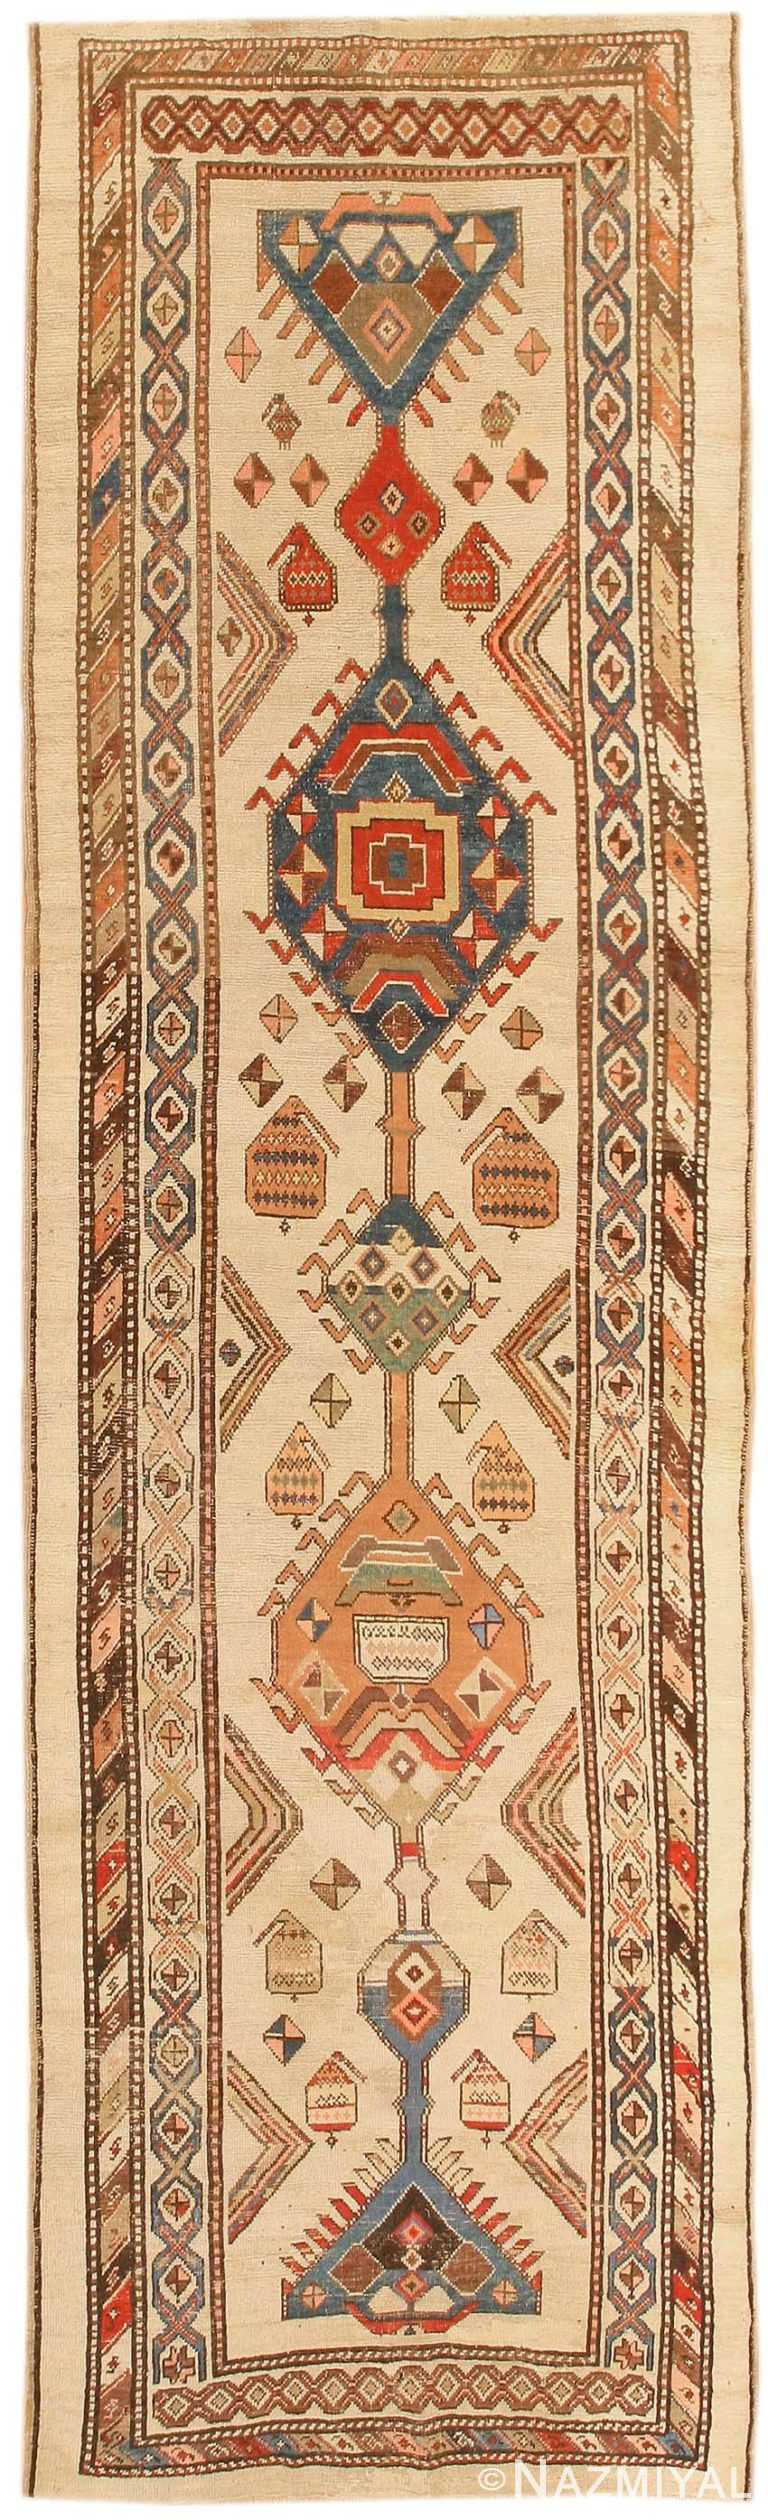 Antique Bakshaish Persian Rugs 43839 Detail/Large View